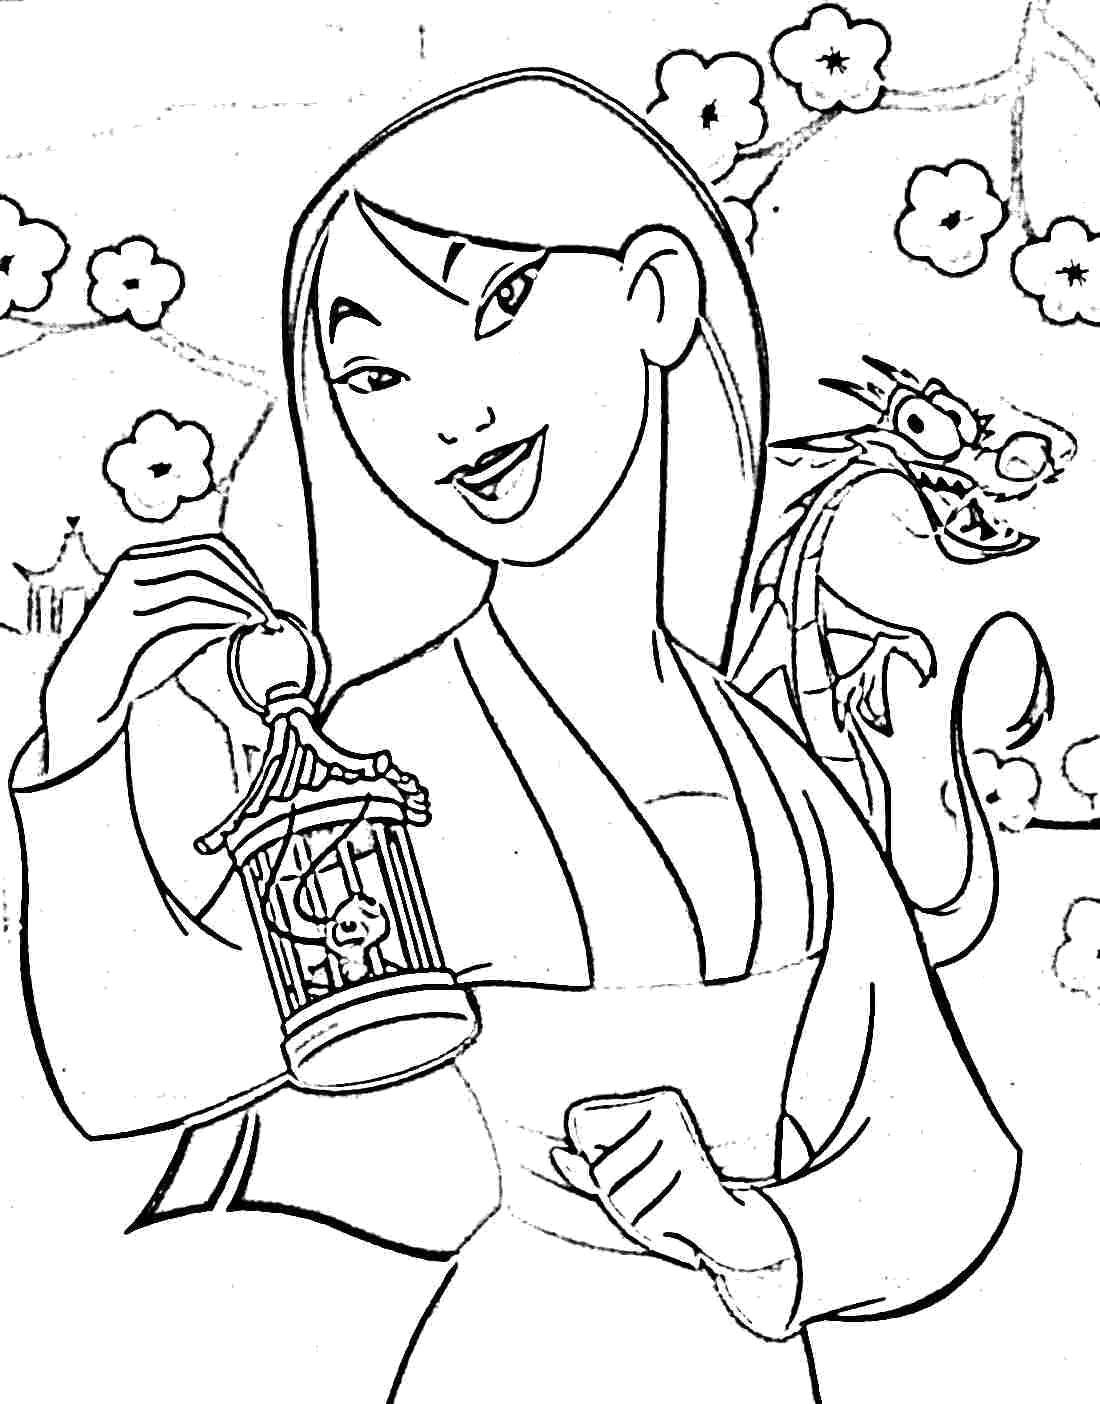 Coloring Beauty Mulan. Category Disney coloring pages. Tags:  Disney, Mulan.